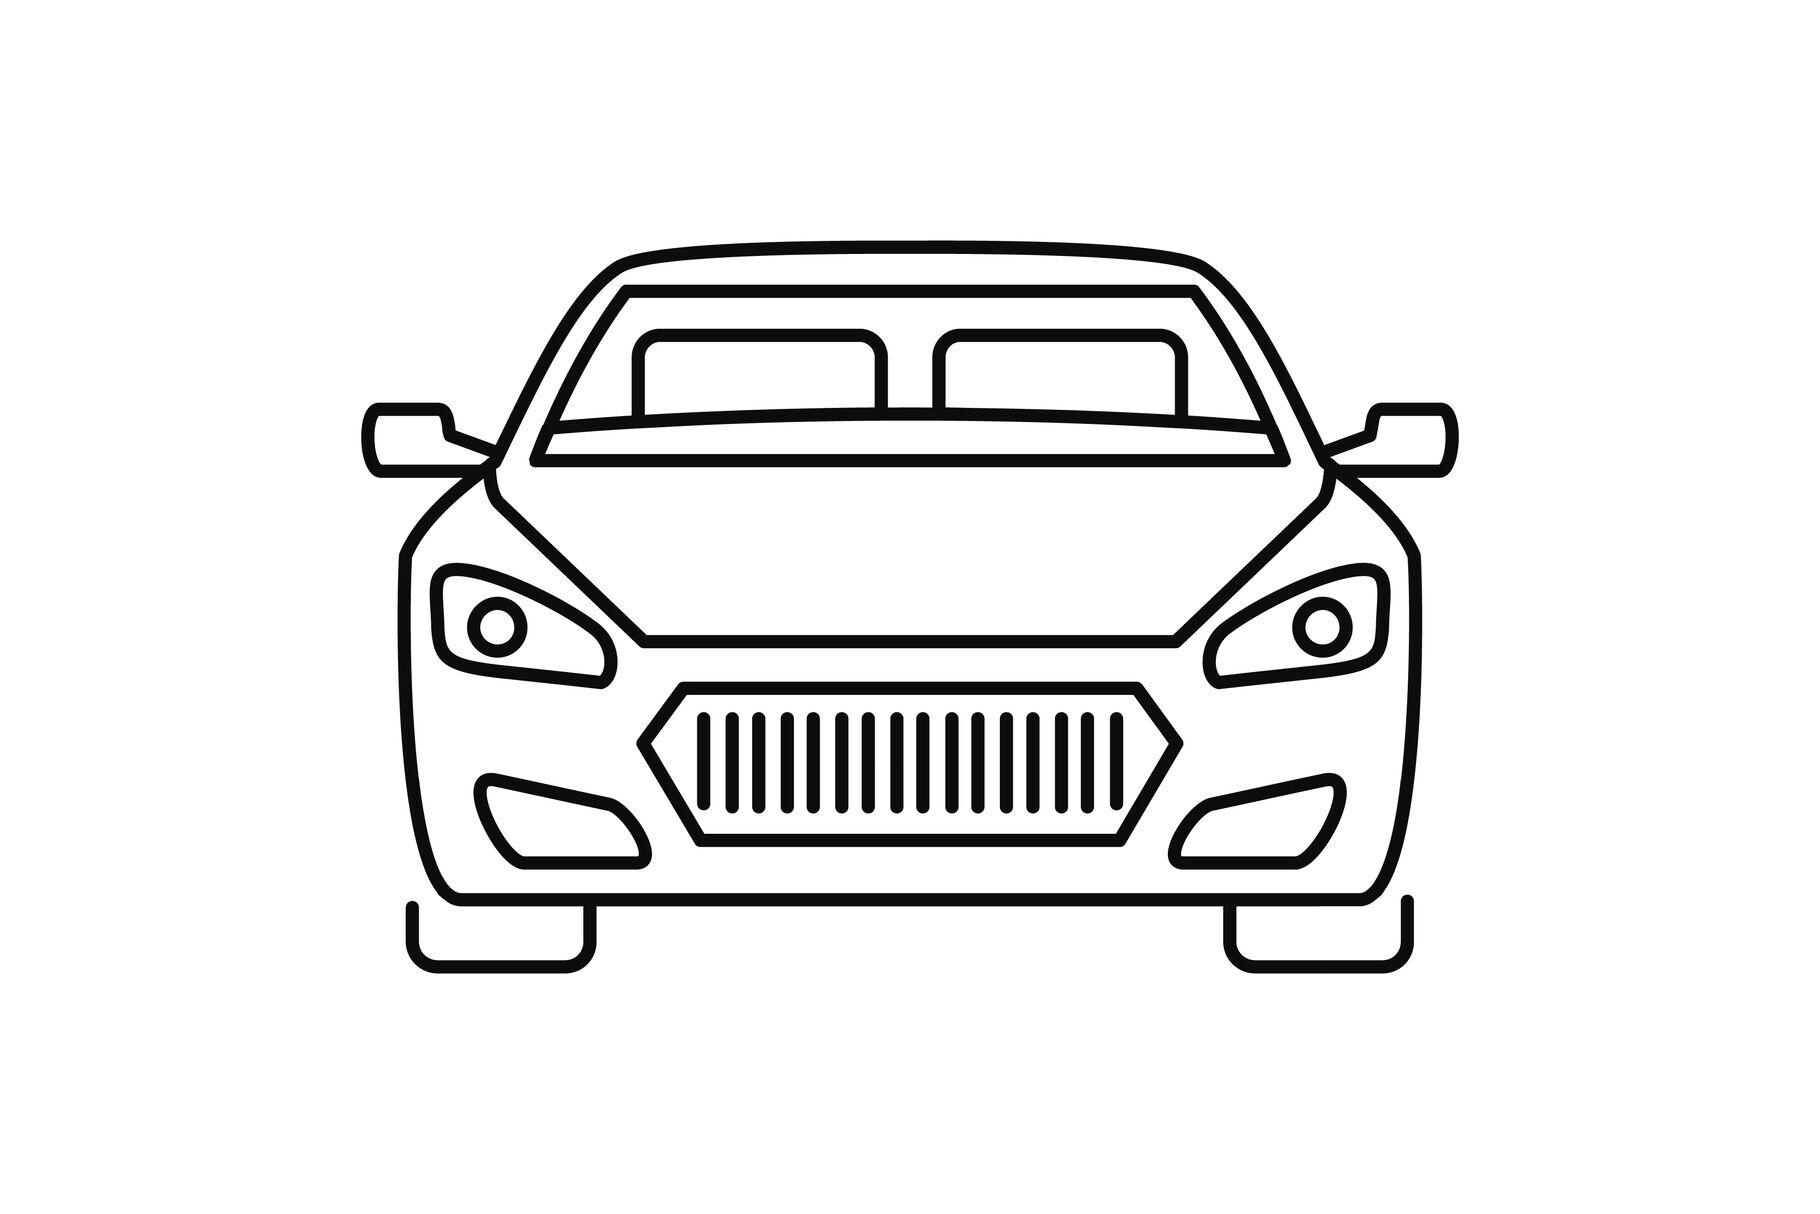 sports car icon